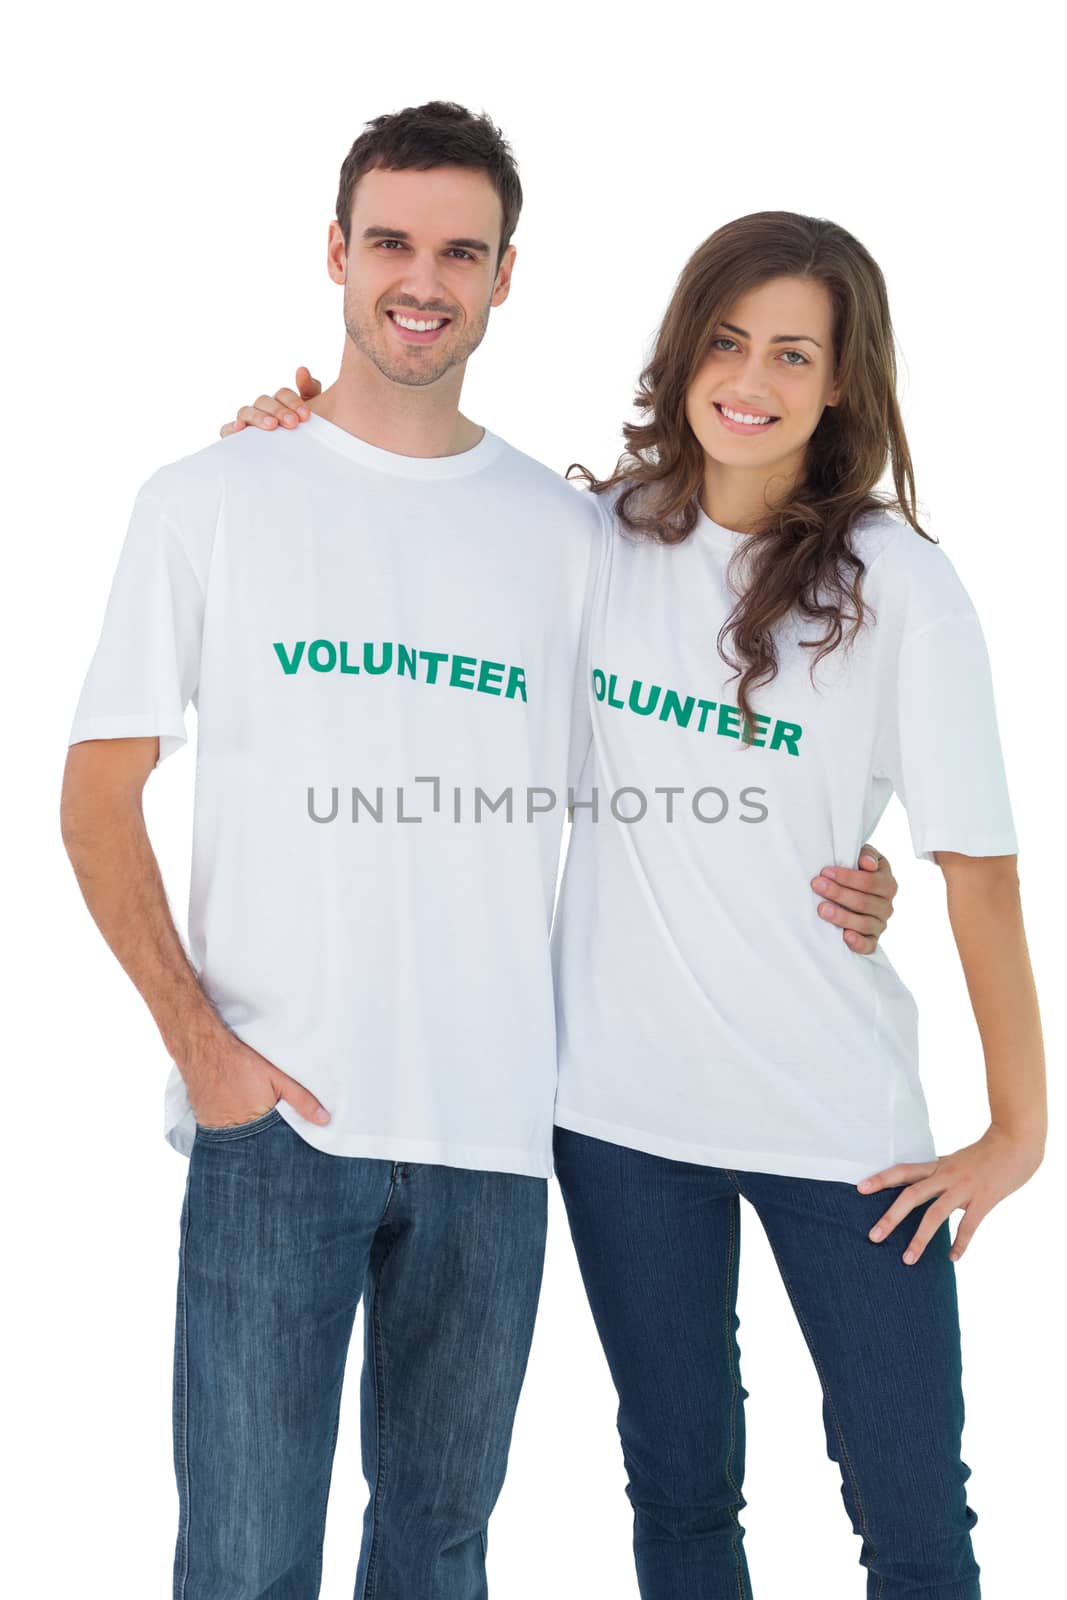 Two cheerful people wearing volunteer tshirt by Wavebreakmedia